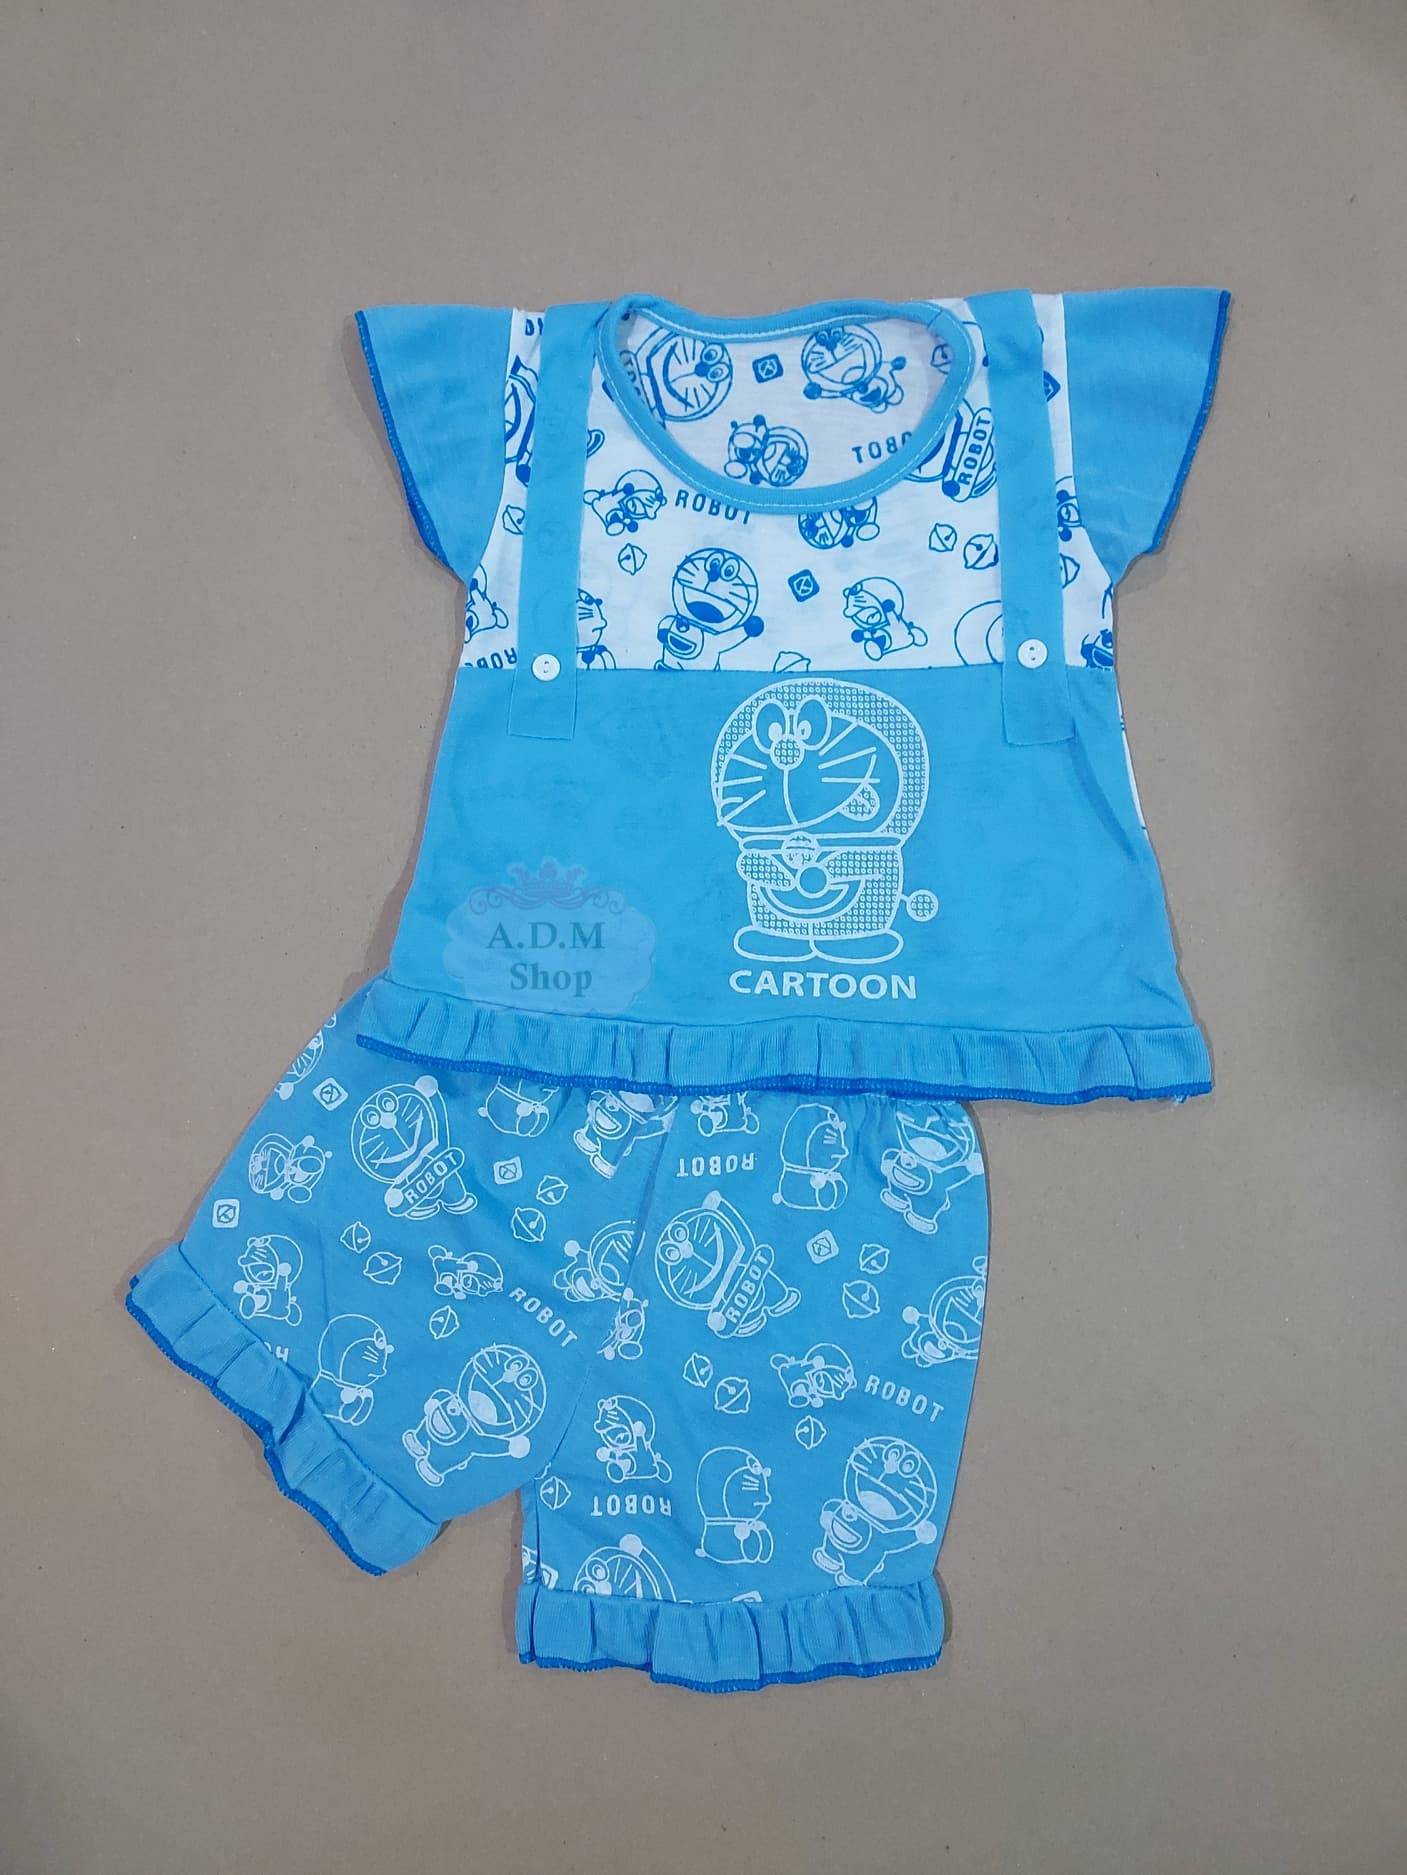 เสื้อผ้าเด็ก ชุดเด็กหญิง ลายการ์ตูน ไซส์ S อายุ 2 เดือน - 1 ขวบ